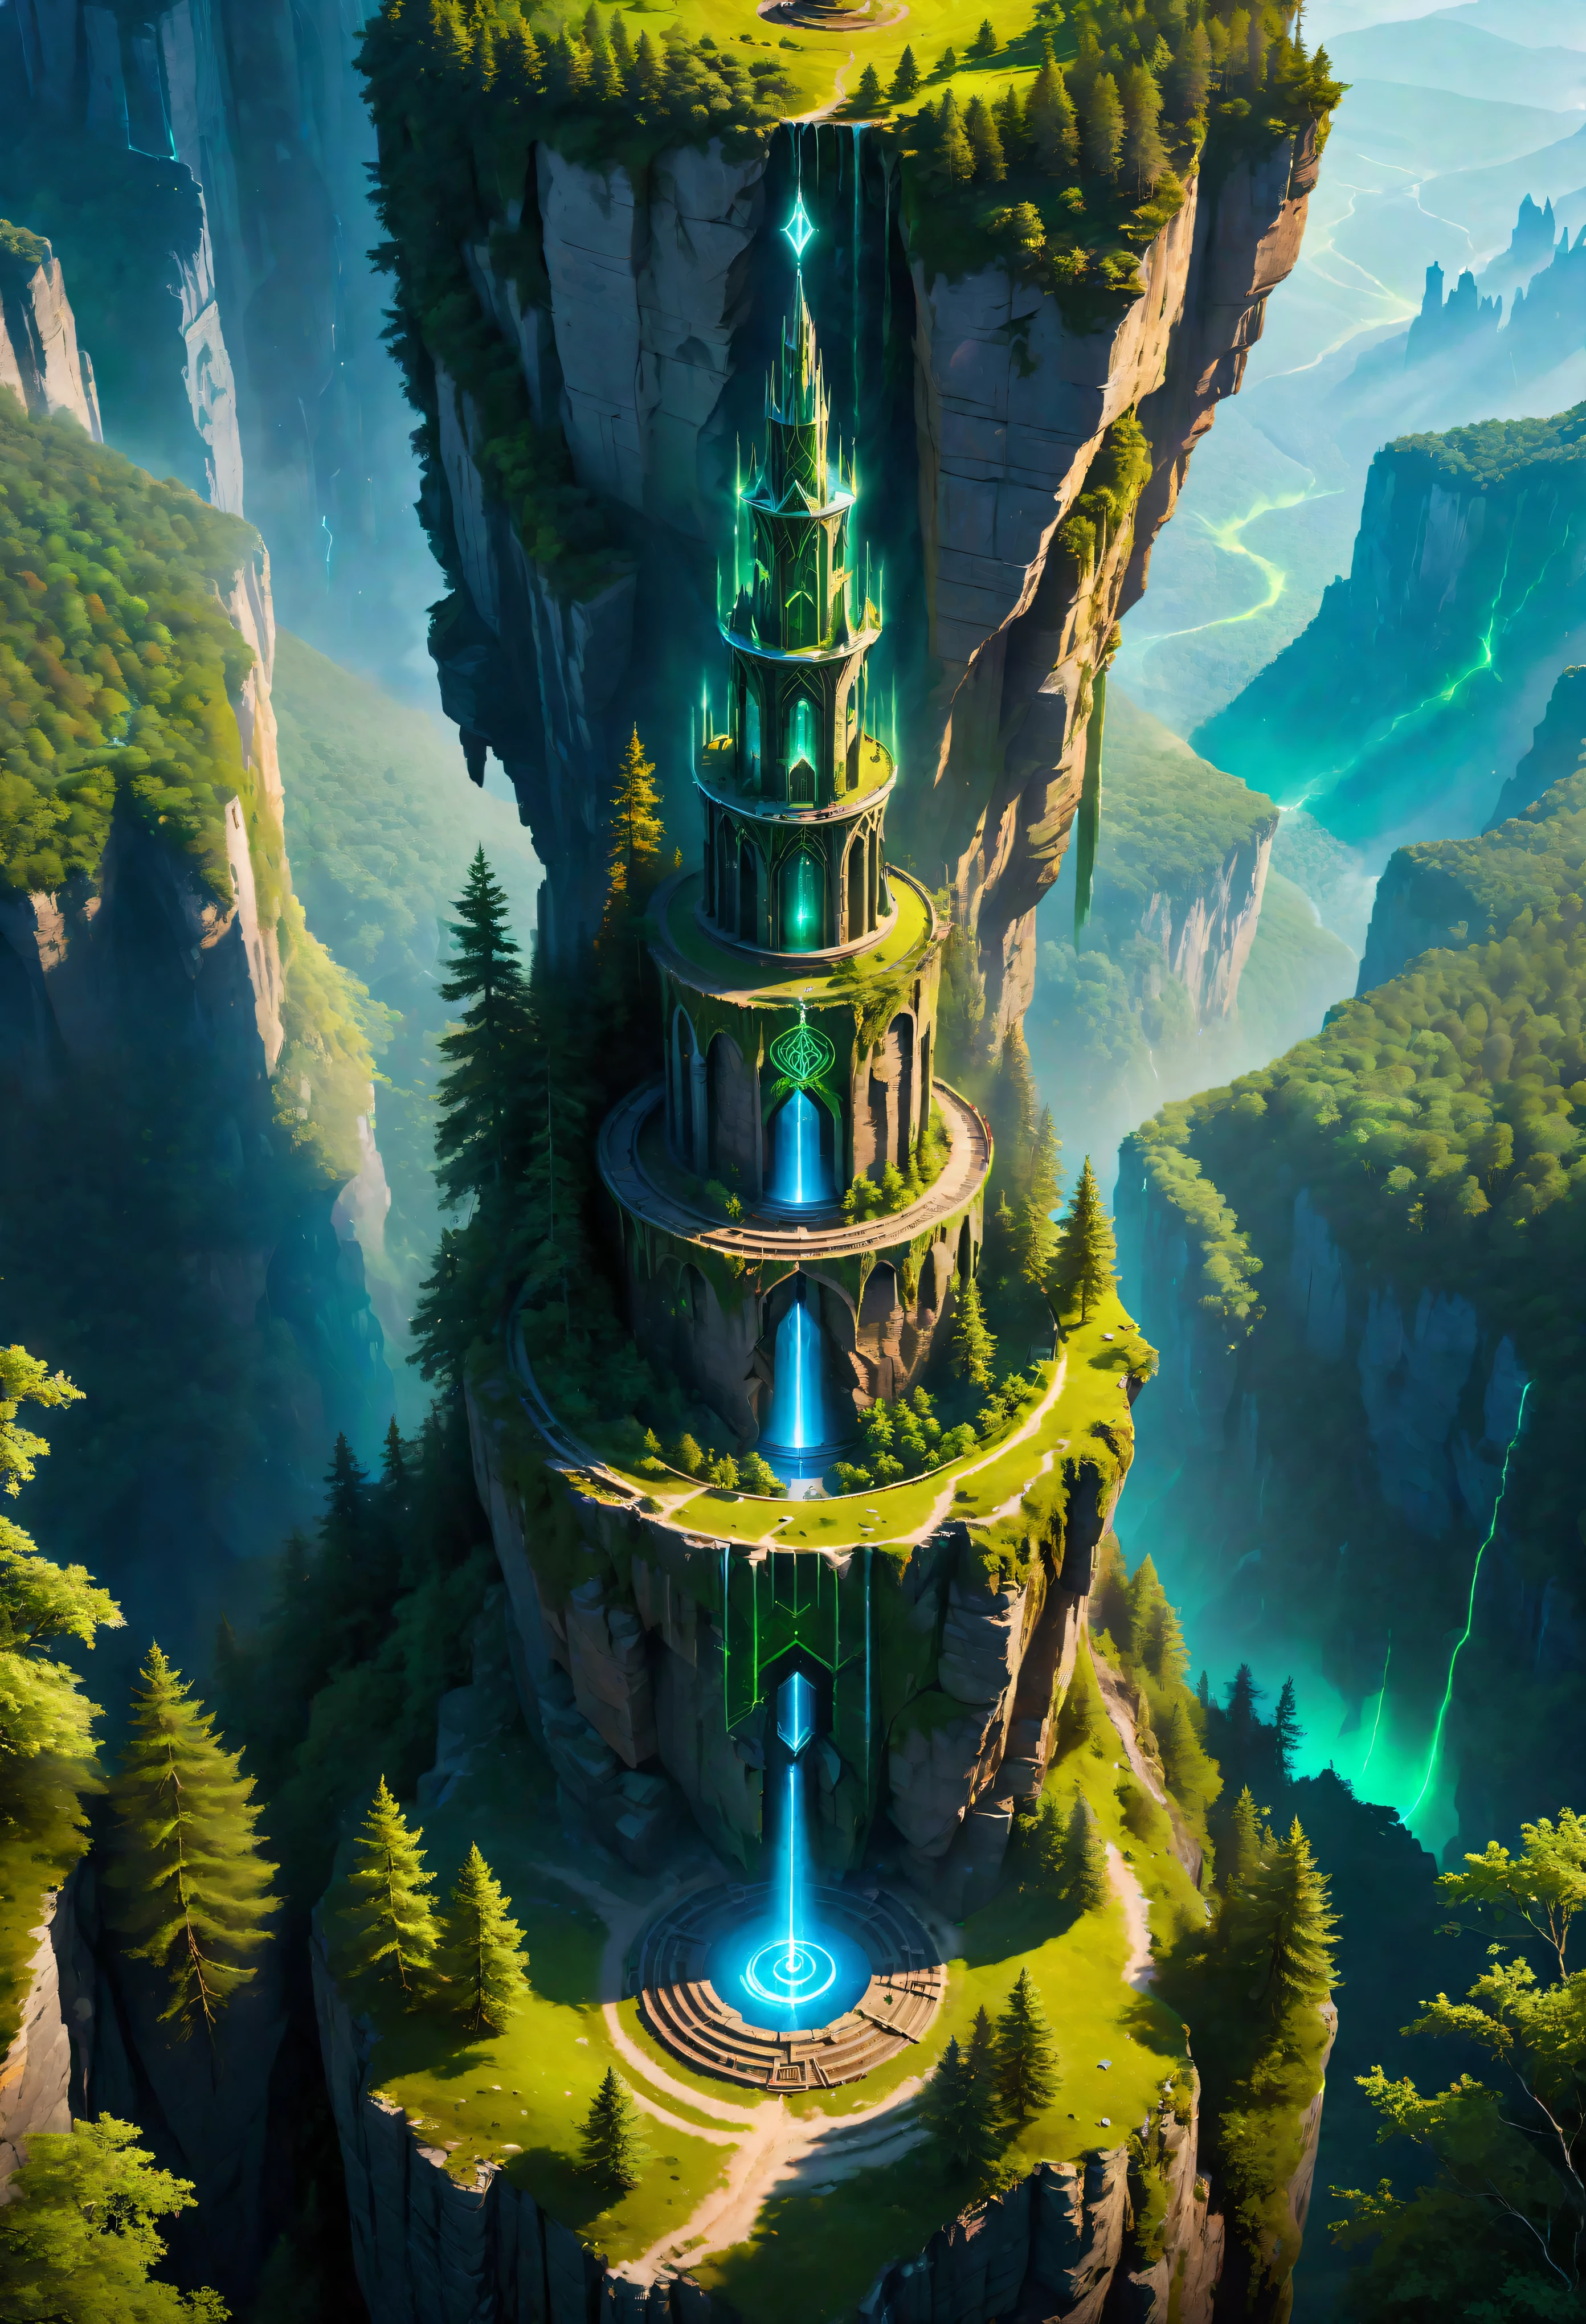 조감도 of Towering steep and towering high 마법의 탑 in a cliff, 야생의 숲, 비대칭 마법진 절벽 협곡, ((조감도):1.2), (빛나는 룬), (빛나는 인장), 자연환경과의 공존, 마법진 탑, lush colorful 야생의 숲, 아름다운 풍경, 마법의 탑, 매우 상세한, 최고의 품질, 걸작, 높은 해상도, 초현실주의적, 8K, 평면도,  높은 각도보기, 블루컬러 팔레트, 미니멀리즘.